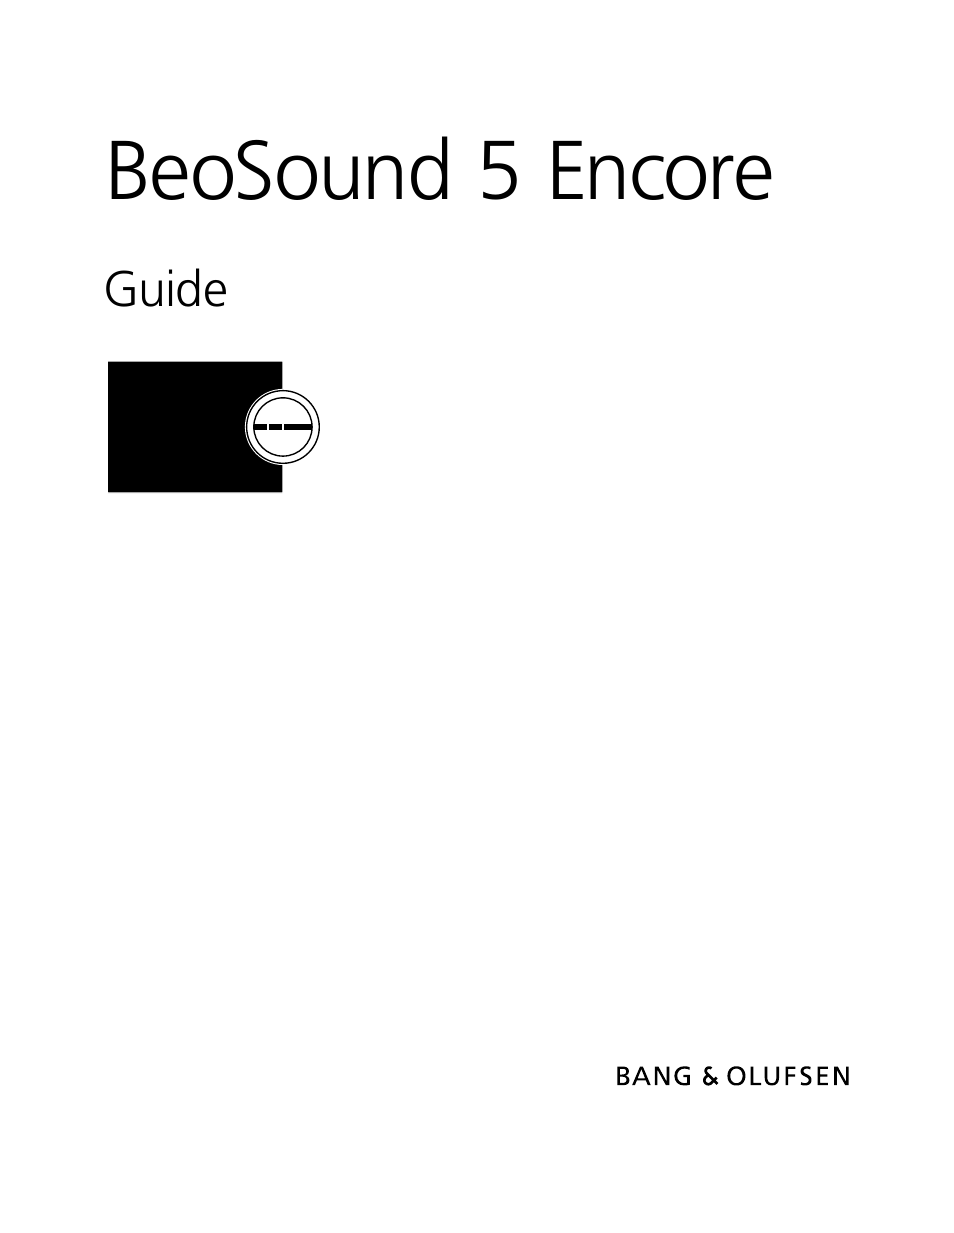 BeoSound 5 Encore - User Guide